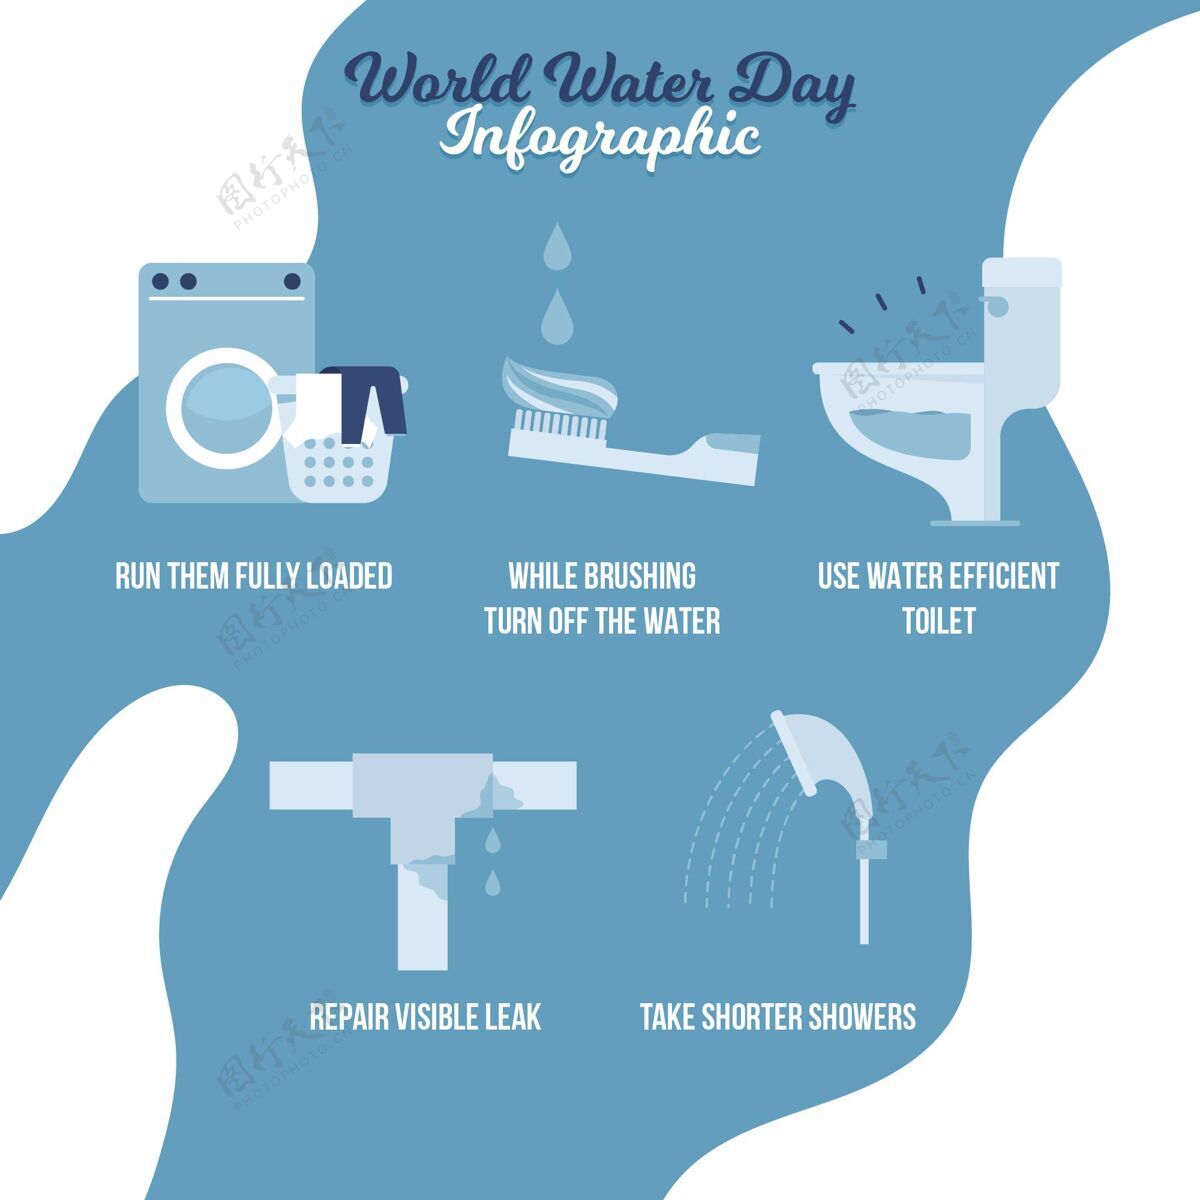 信息图平面世界水日信息图模板3月22日全球图形